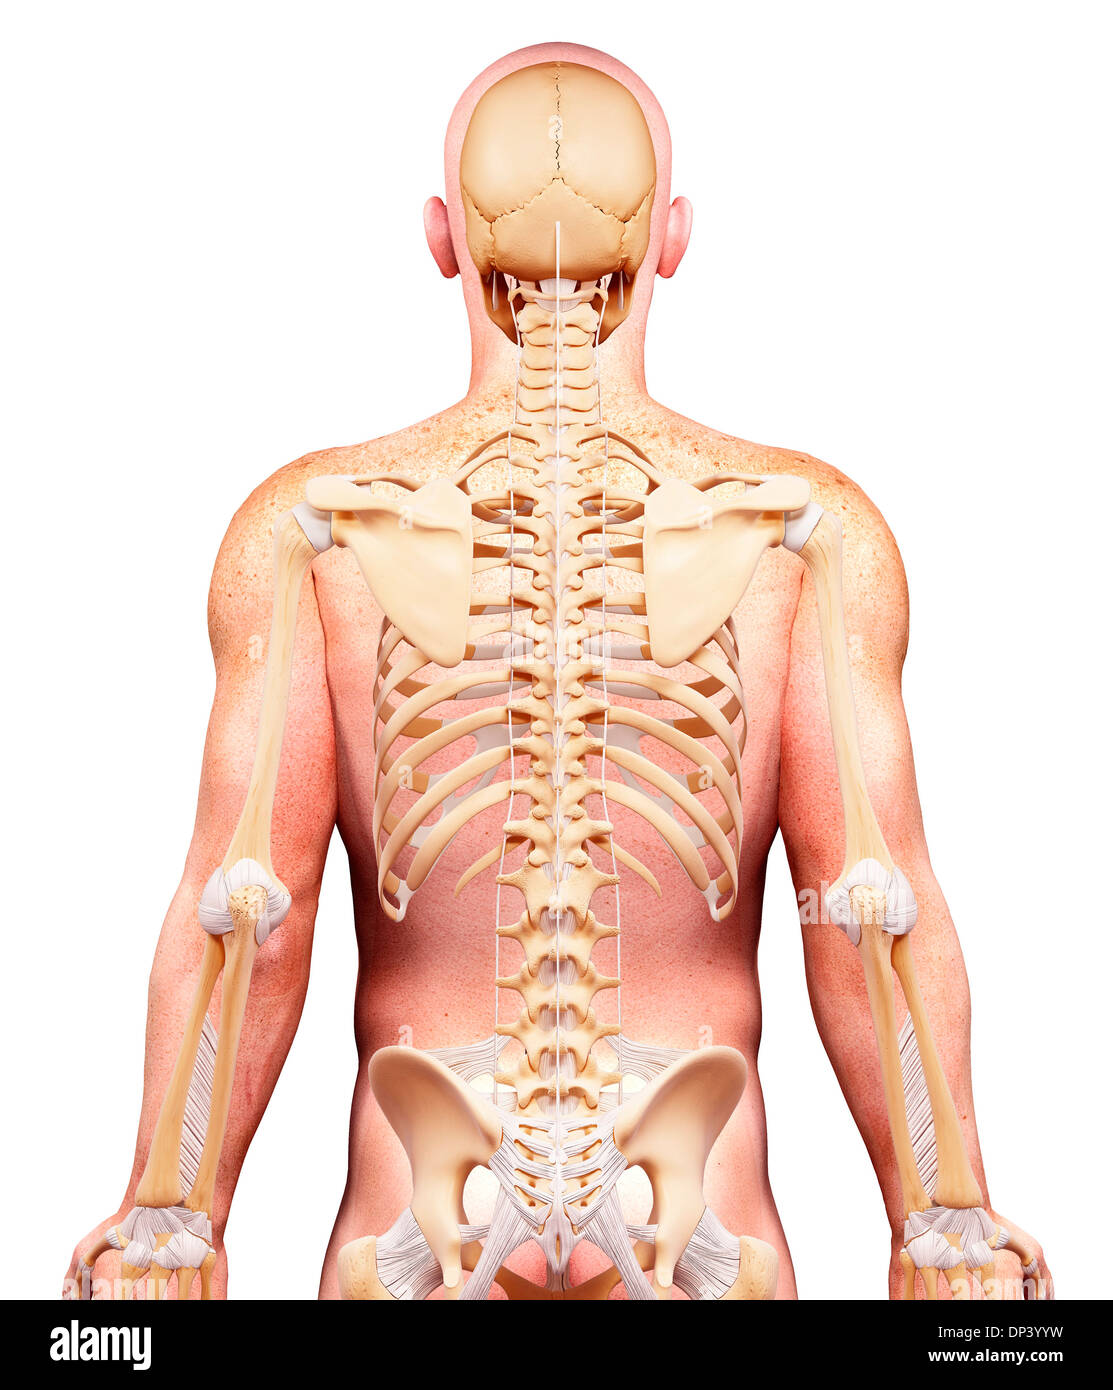 Скелет человека спина. Скелет человека со спины. Скелет мужской спины. Человеческое тело со спины.